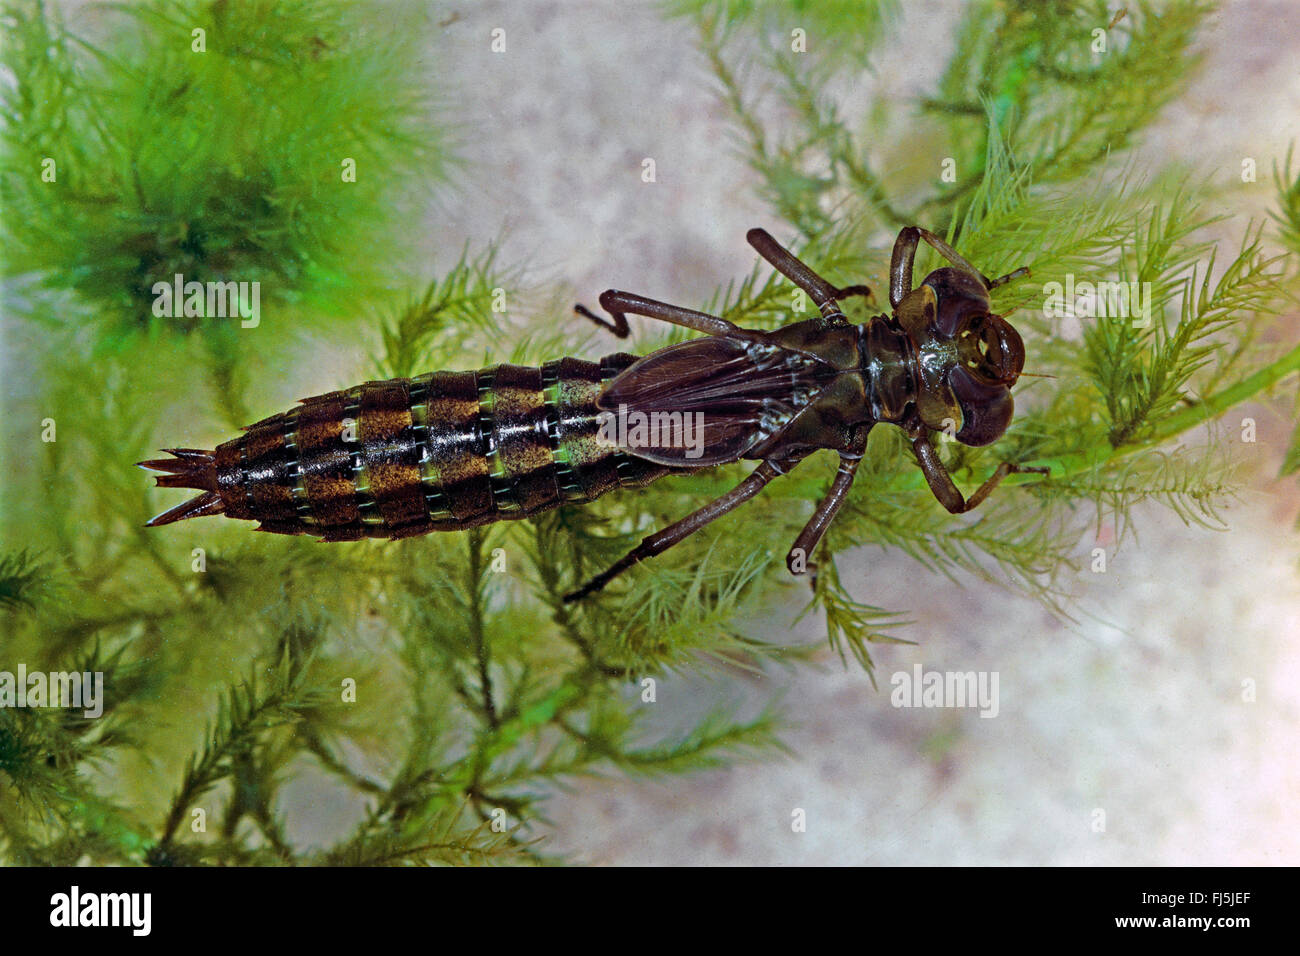 Subarctic peat-moor hawker, Subarctic Hawker (Aeshna subarctica, Aeschna subarctica), aquativ larva, Germany Stock Photo